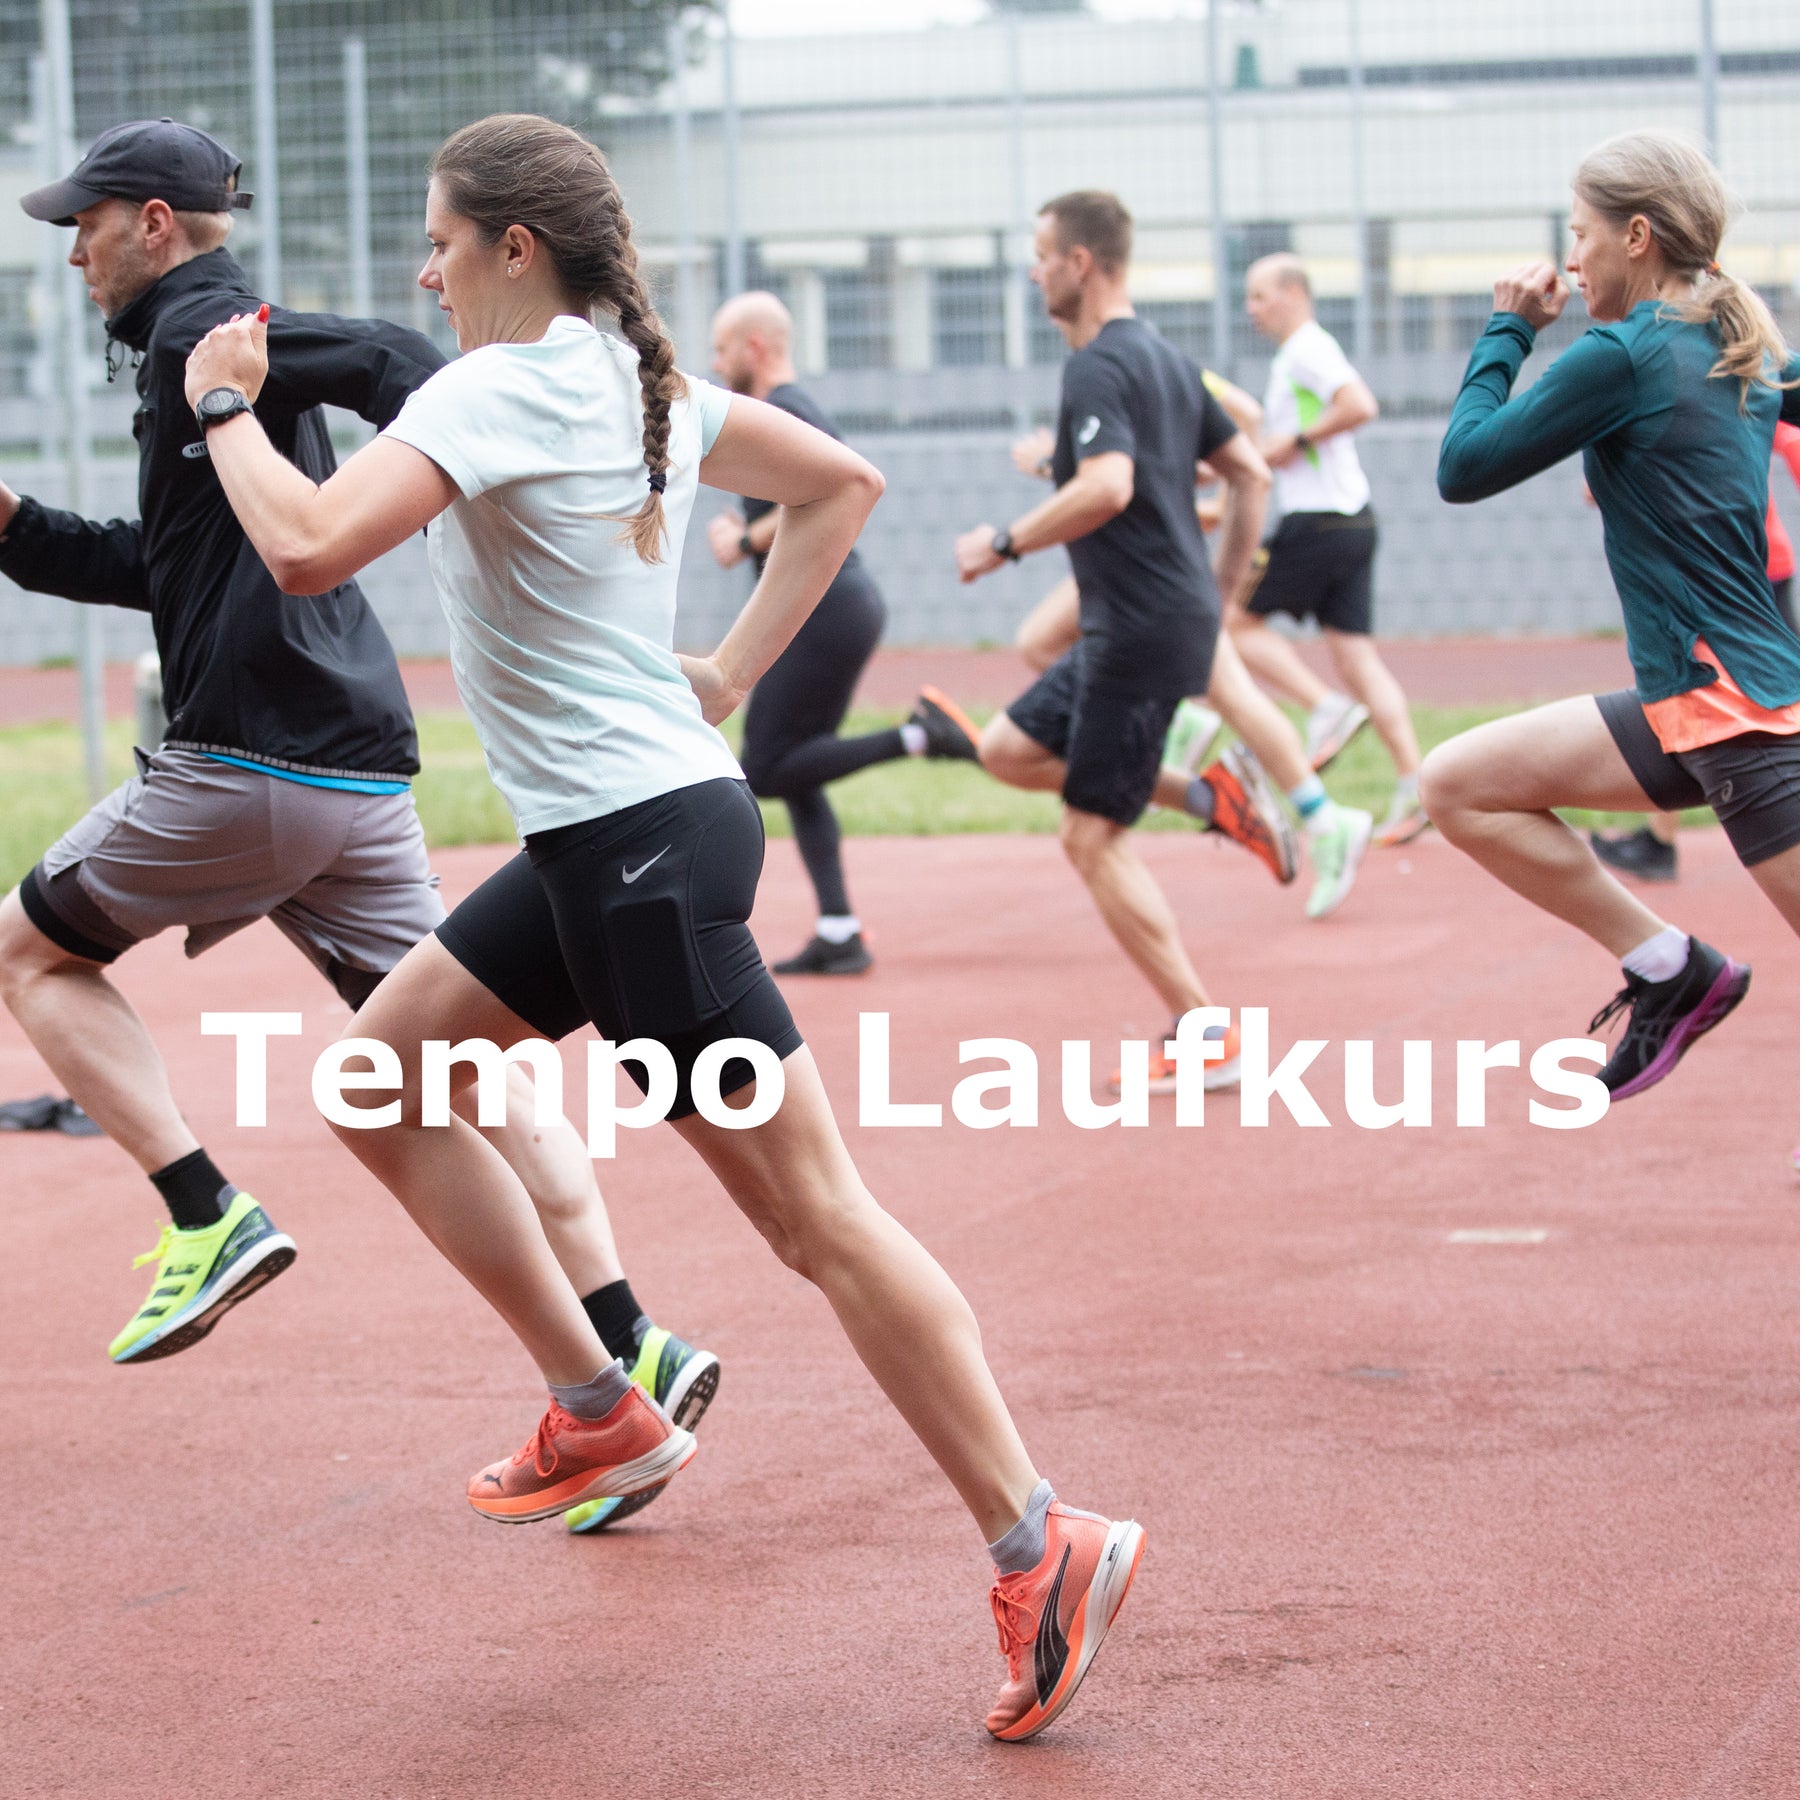 Tempo-Kurs – Tempotraining Laufkurs für alle in Zülpich